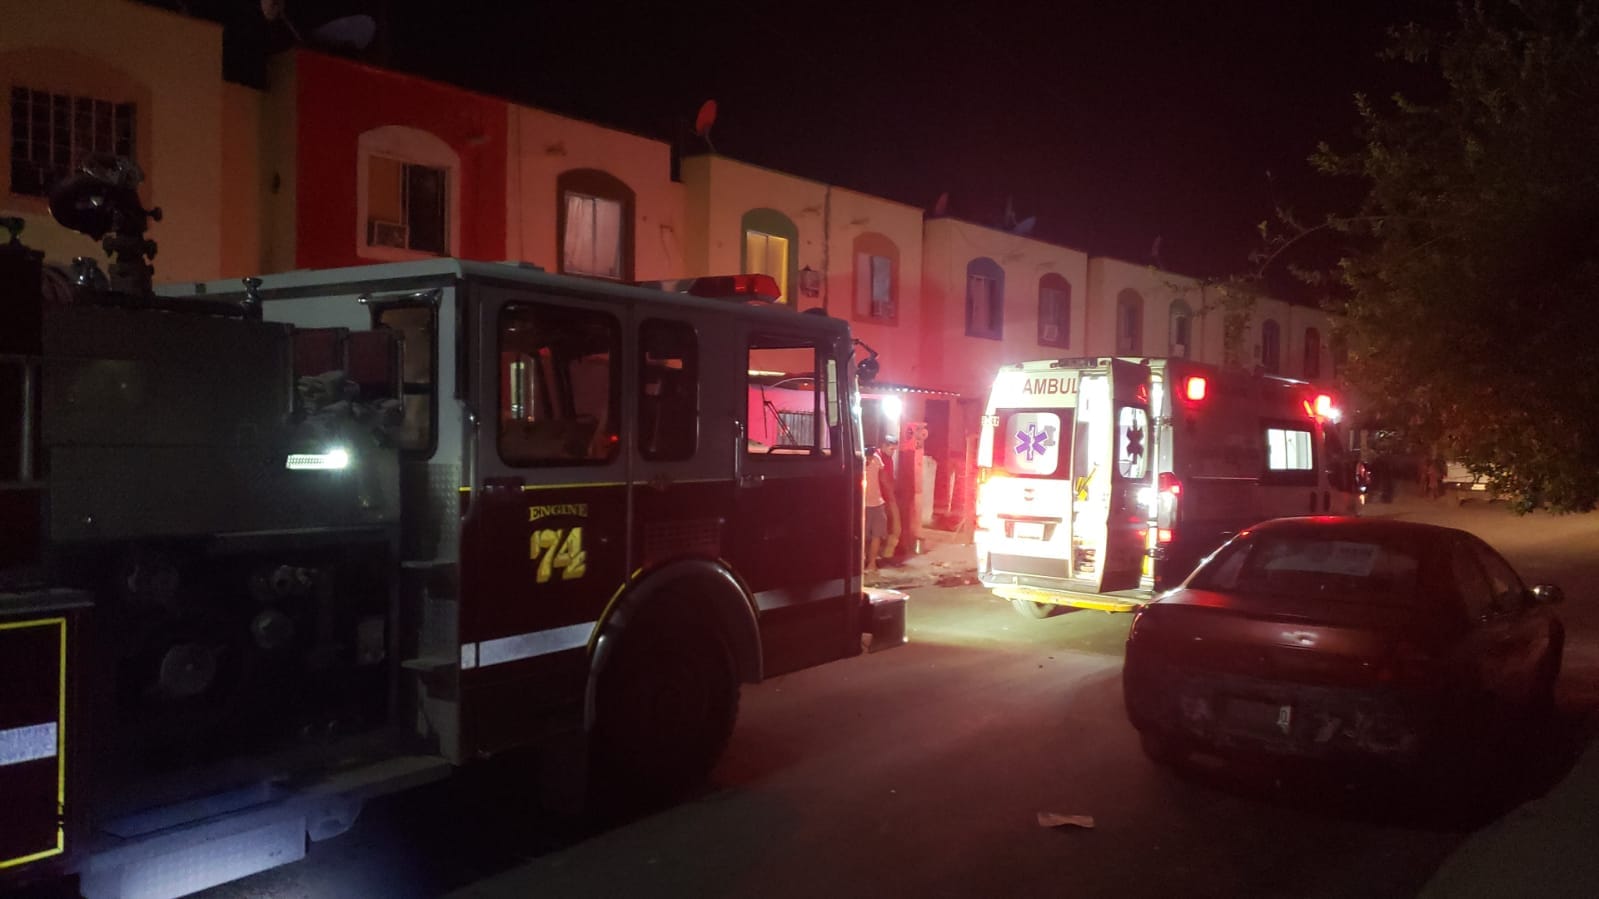 Se registra explosión en domicilio de Morelos; hombre resulta con quemaduras